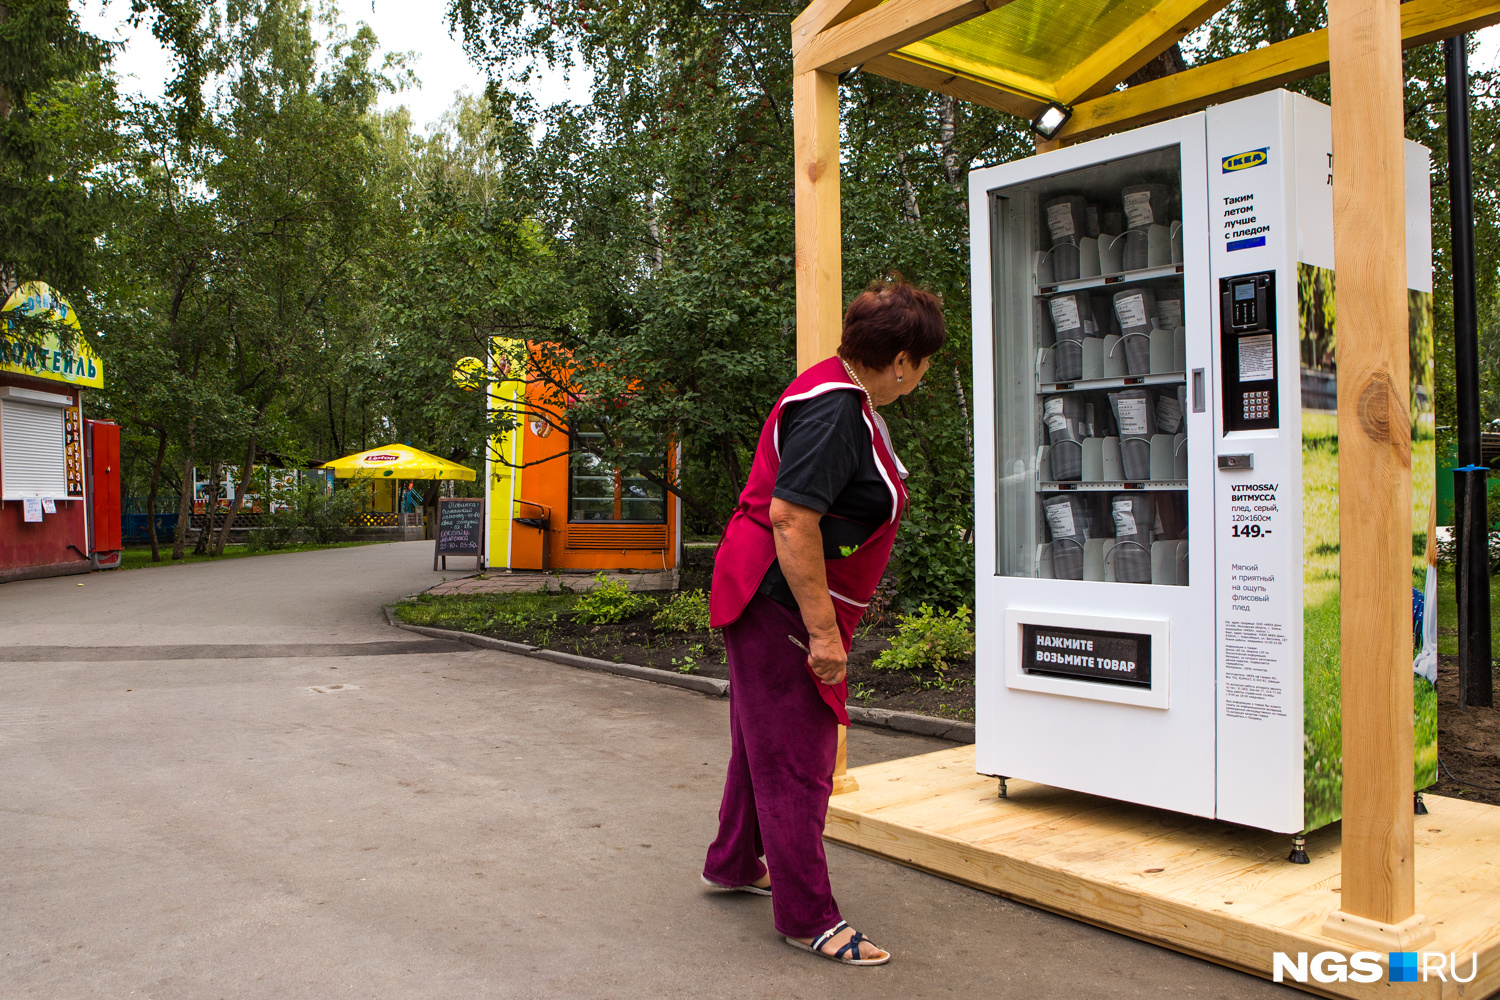 Работники киосков в парке с интересом отнеслись к новинке, но запустят автомат только завтра